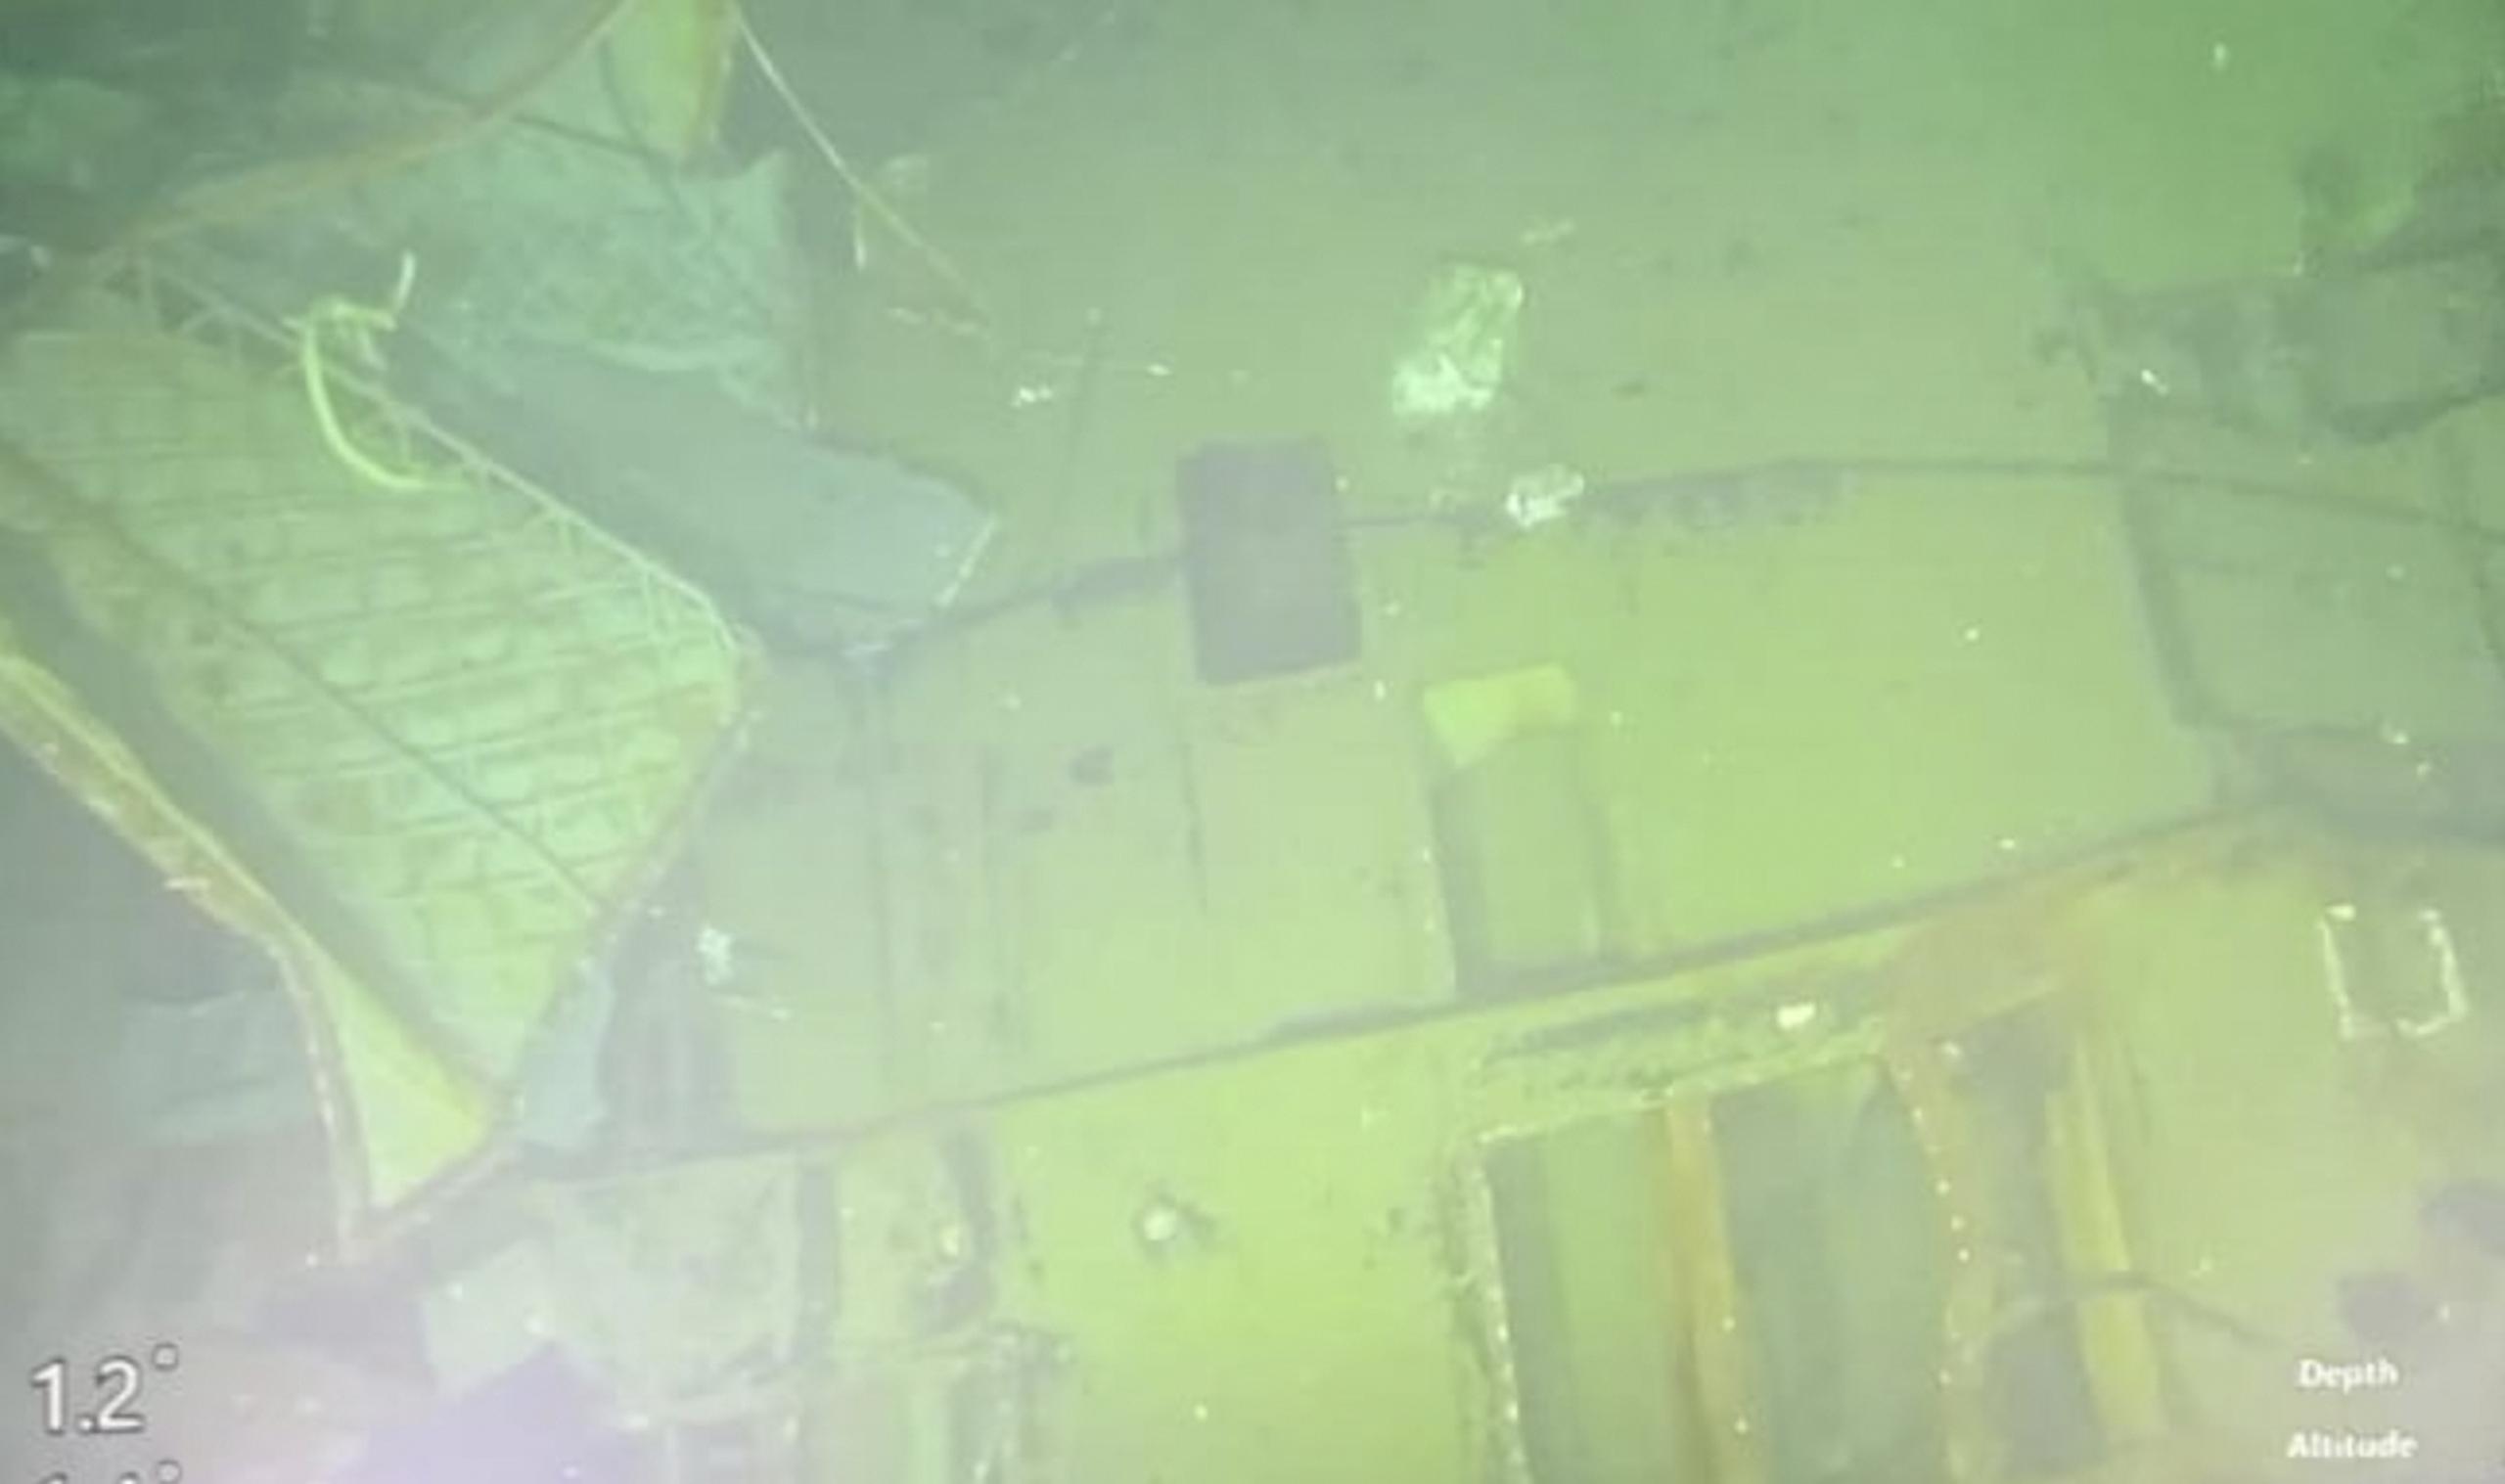 Un robot subacuático equipado con cámaras encontró al submarino partido en por lo menos tres partes sobre el lecho marino a una profundidad de 2,750 pies, dijo el almirante Yudo Margono, el jefe del Estado Mayor del Ejército.